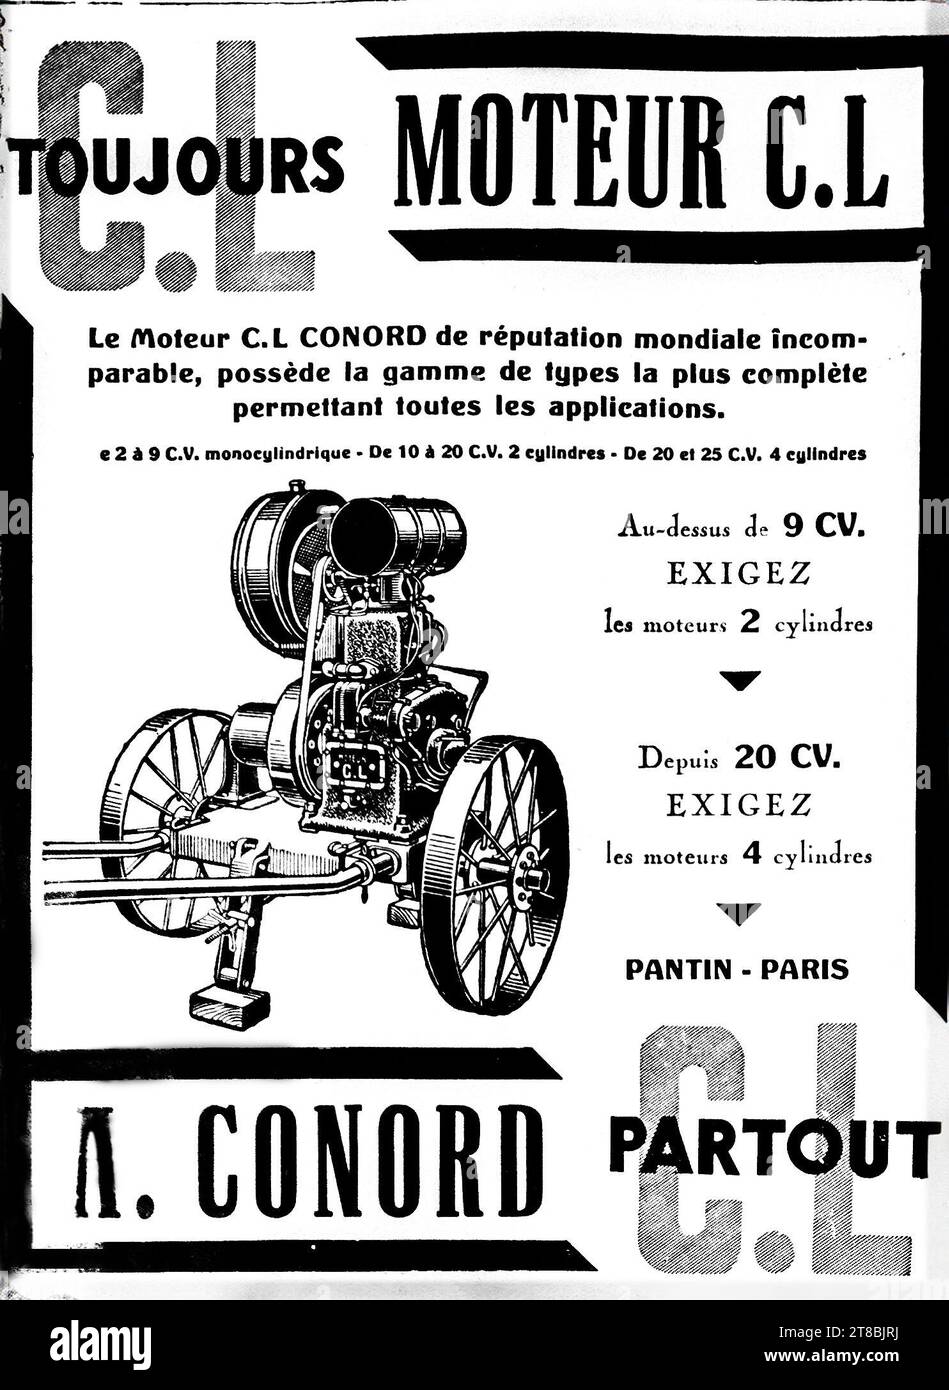 Une publicité monochrome de langue française de 1926 pour les moteurs C.L. Conord présentant une illustration d'un moteur stationnaire à l'ancienne. Banque D'Images